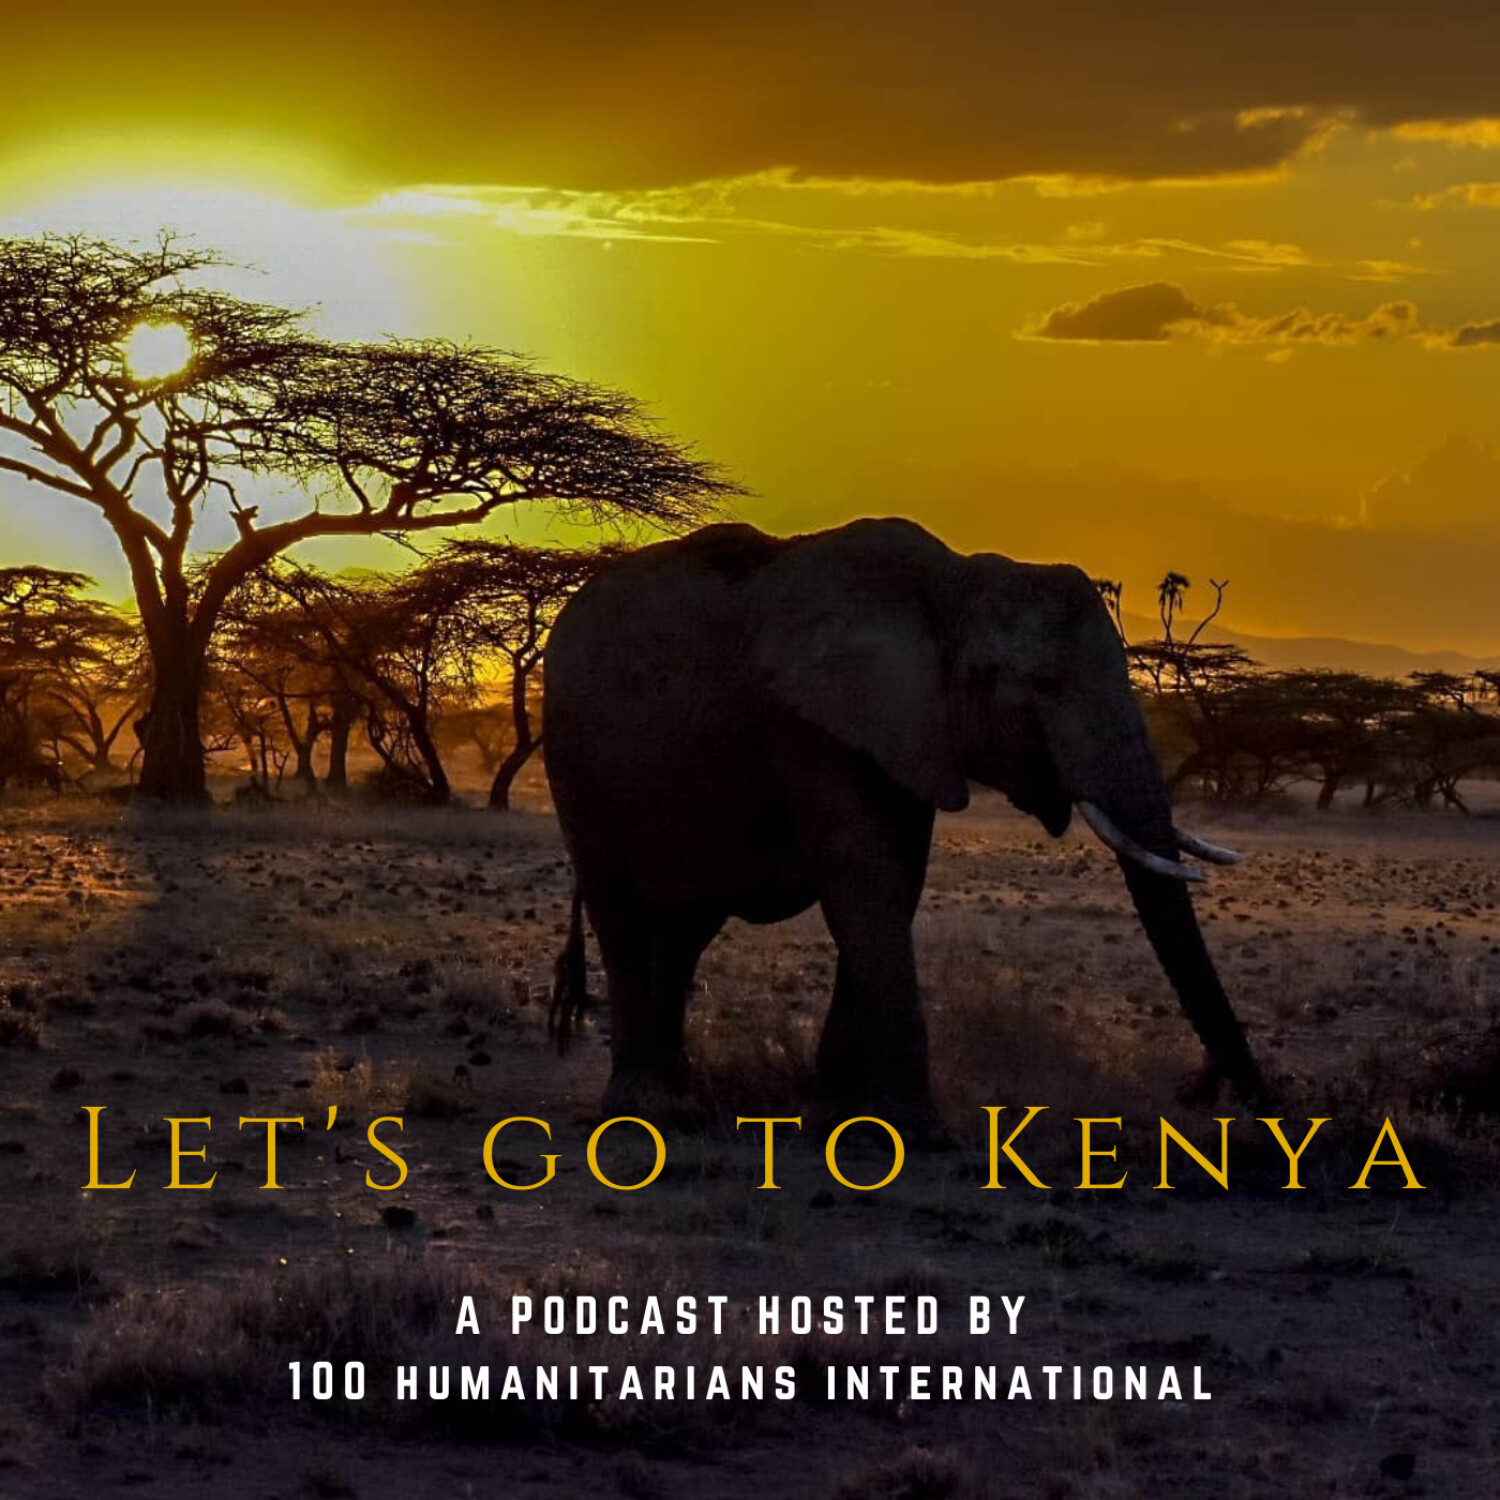 Let's Go to Kenya